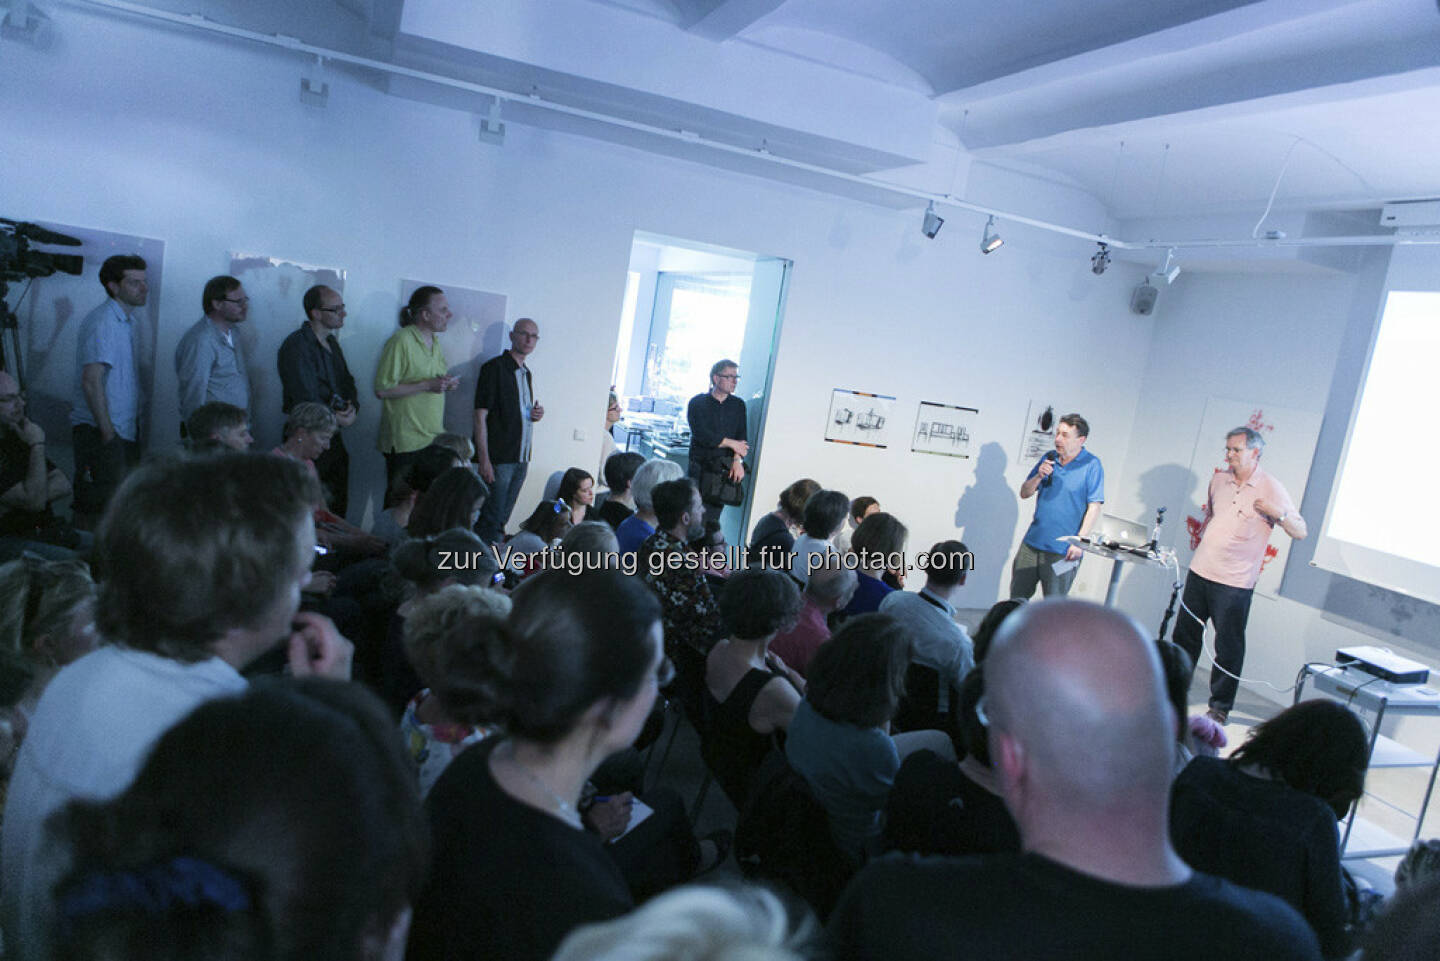 Anzenberger Gallery auf dem Vienna Photo Book Festival